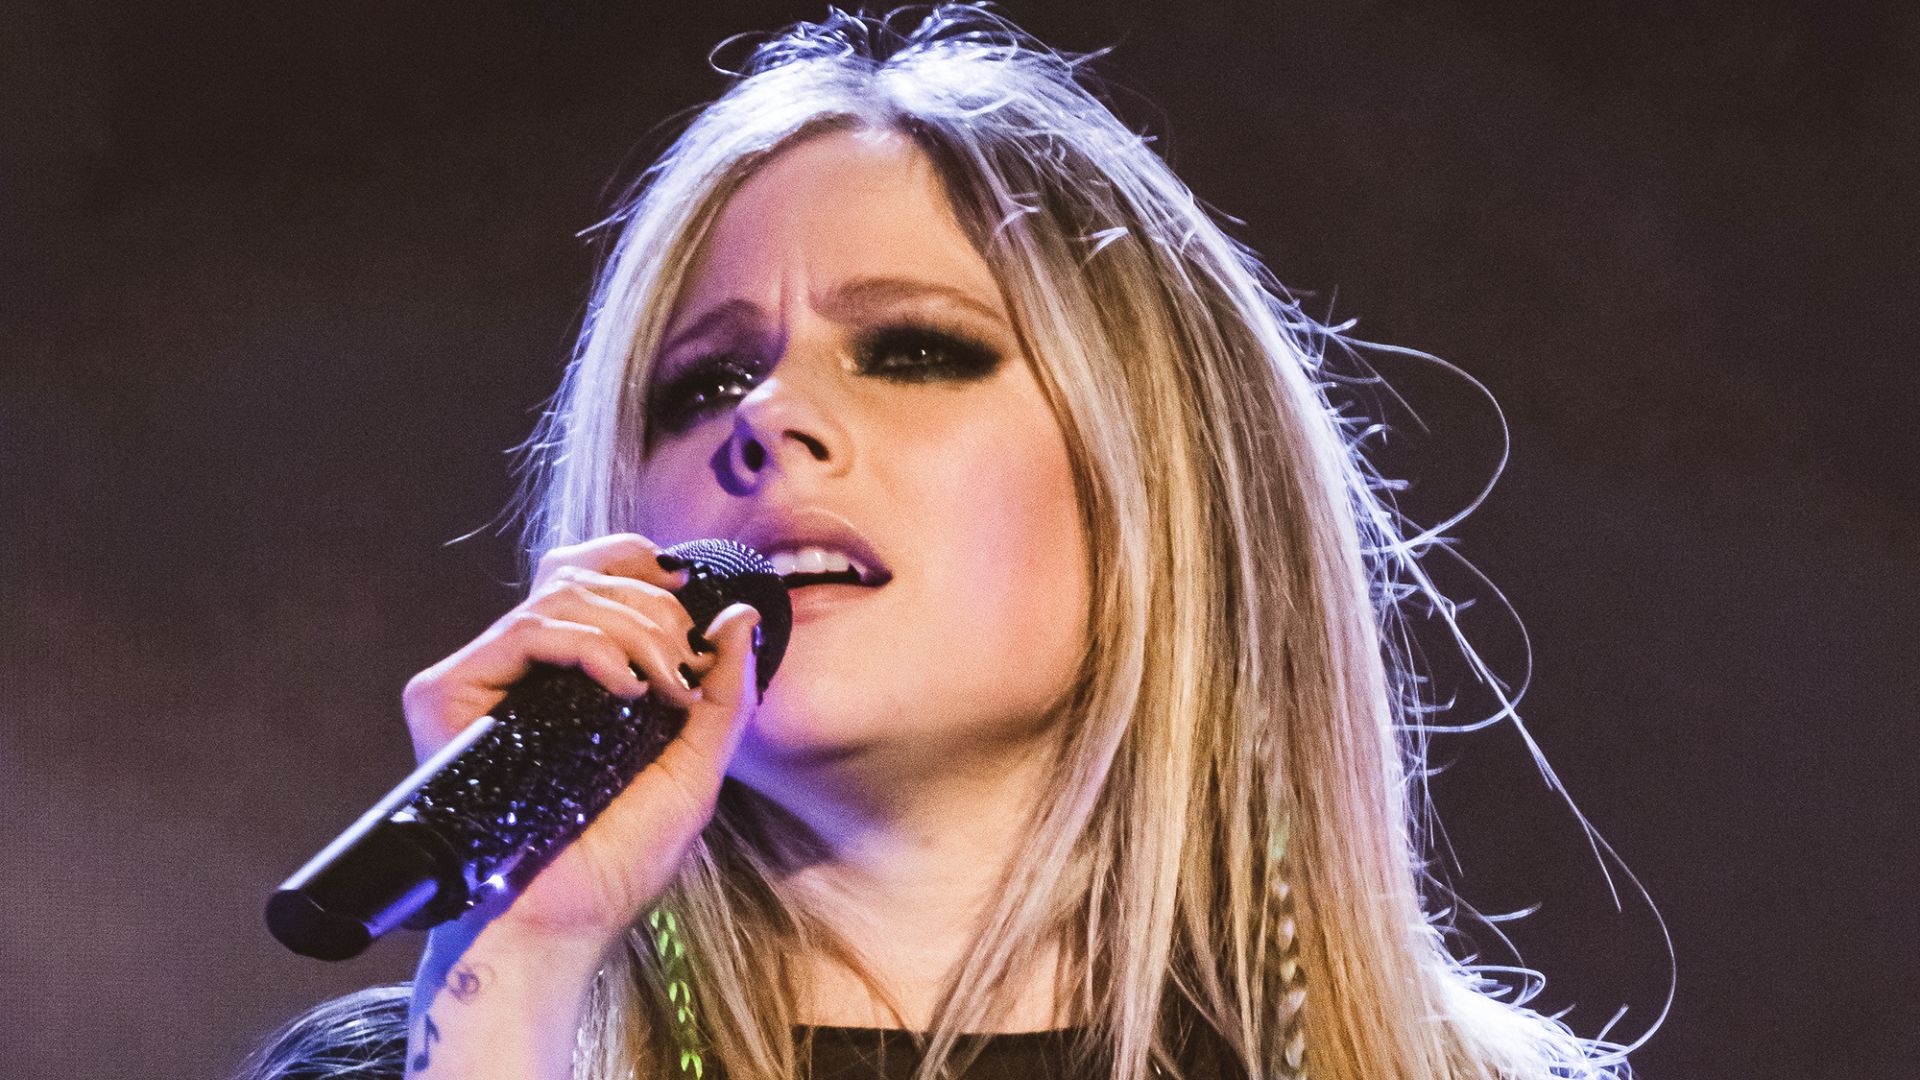 Imagem da cantora Avril Lavigne cantando